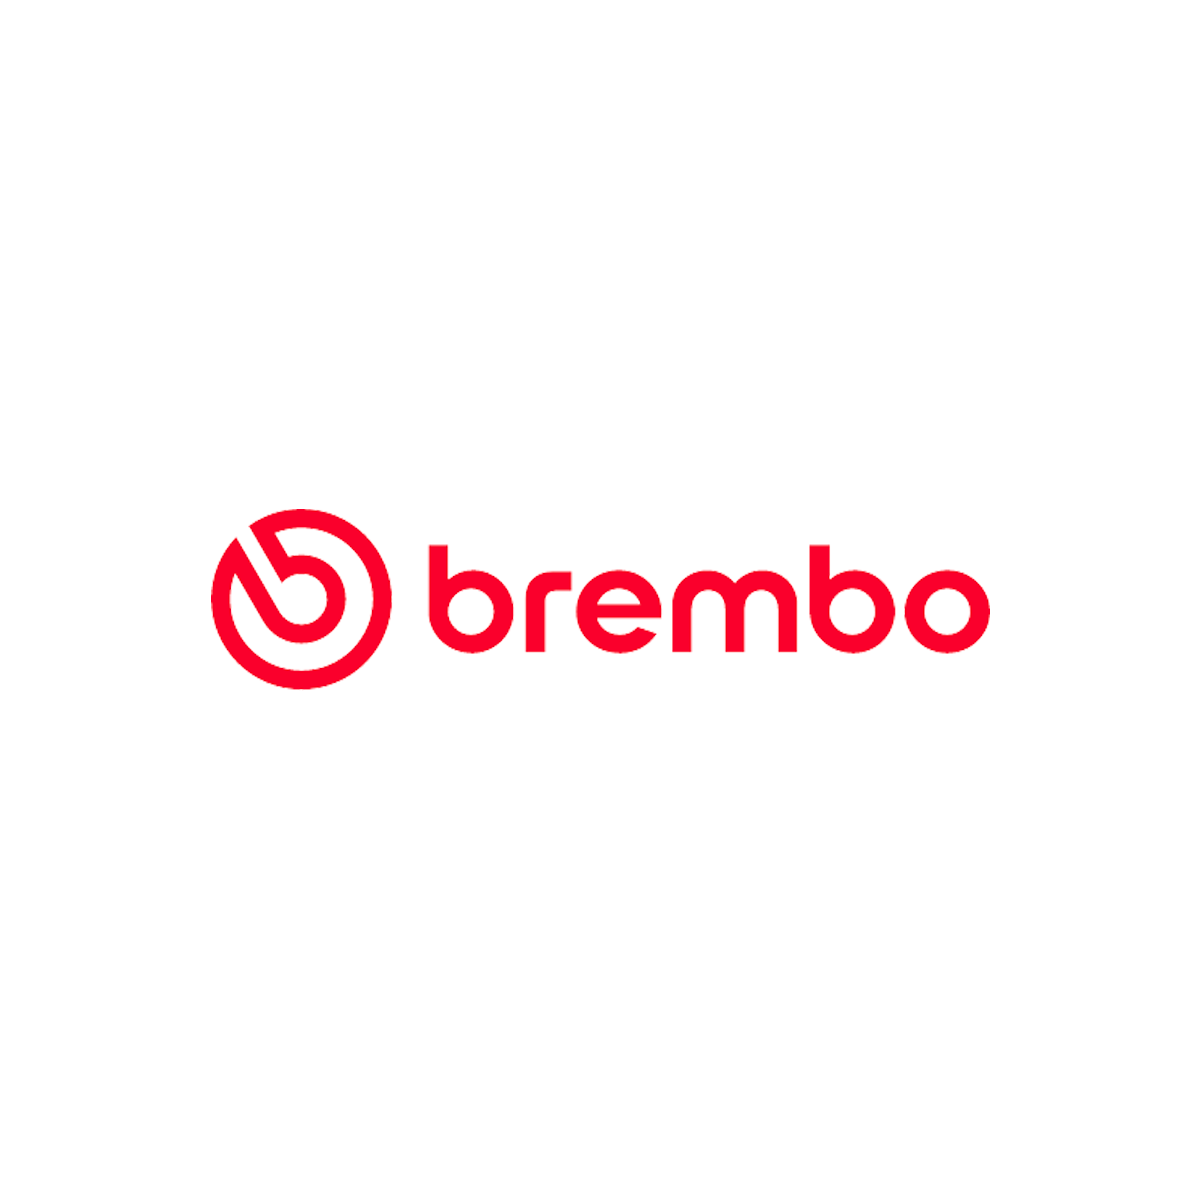 brembo_8